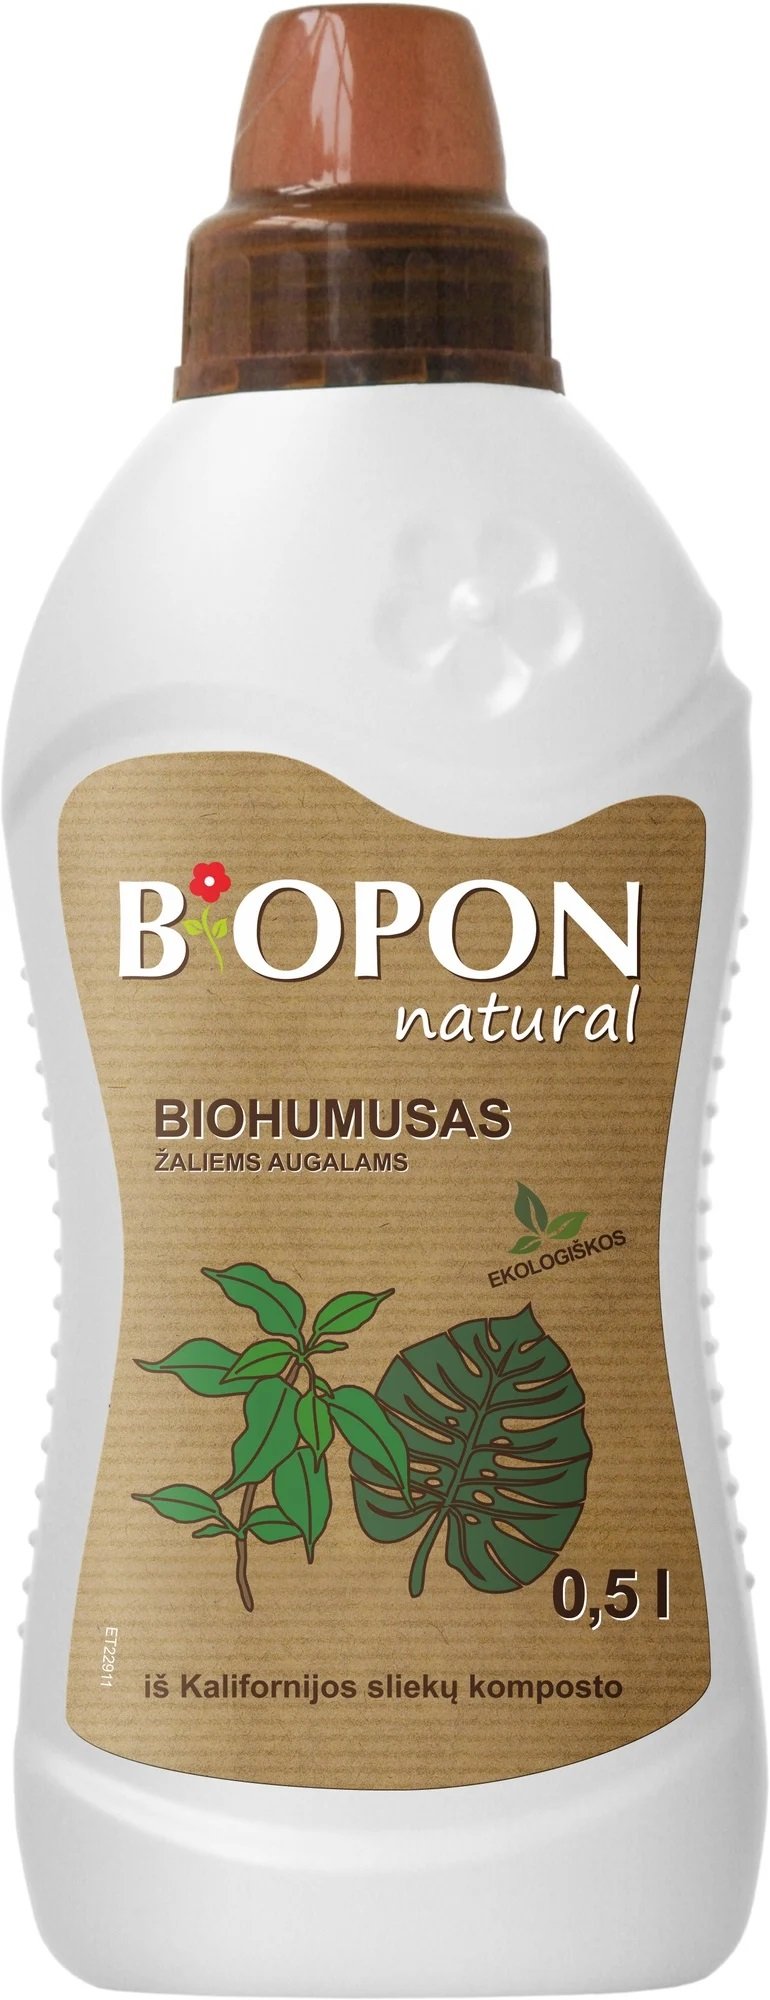 Biohumusas žaliems augalams BIOPON NATURAL, 0,5 L